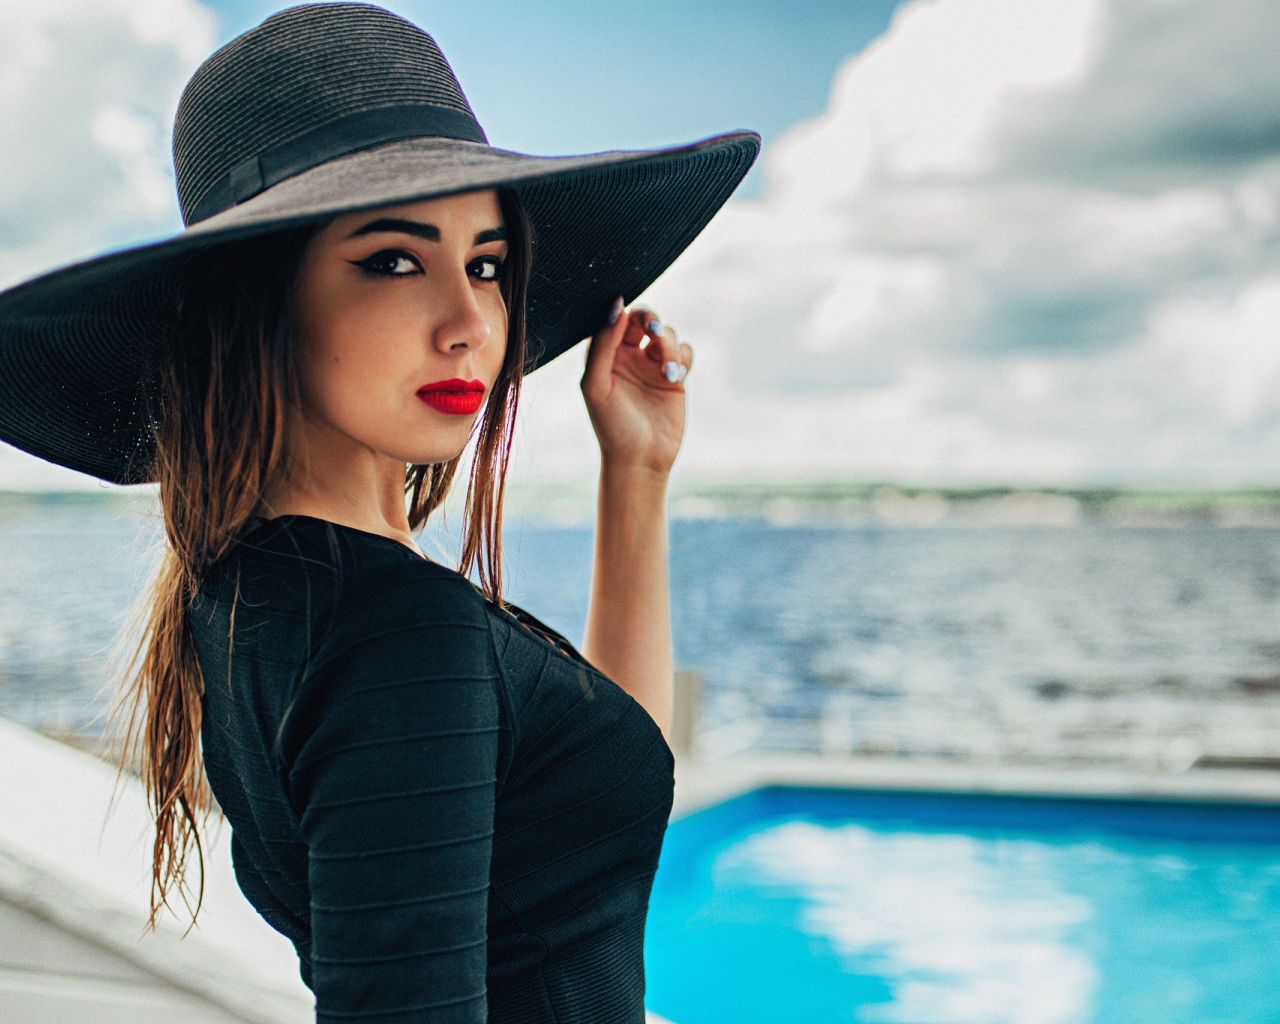 Красивая девушка в большой черной шляпе у бассейна